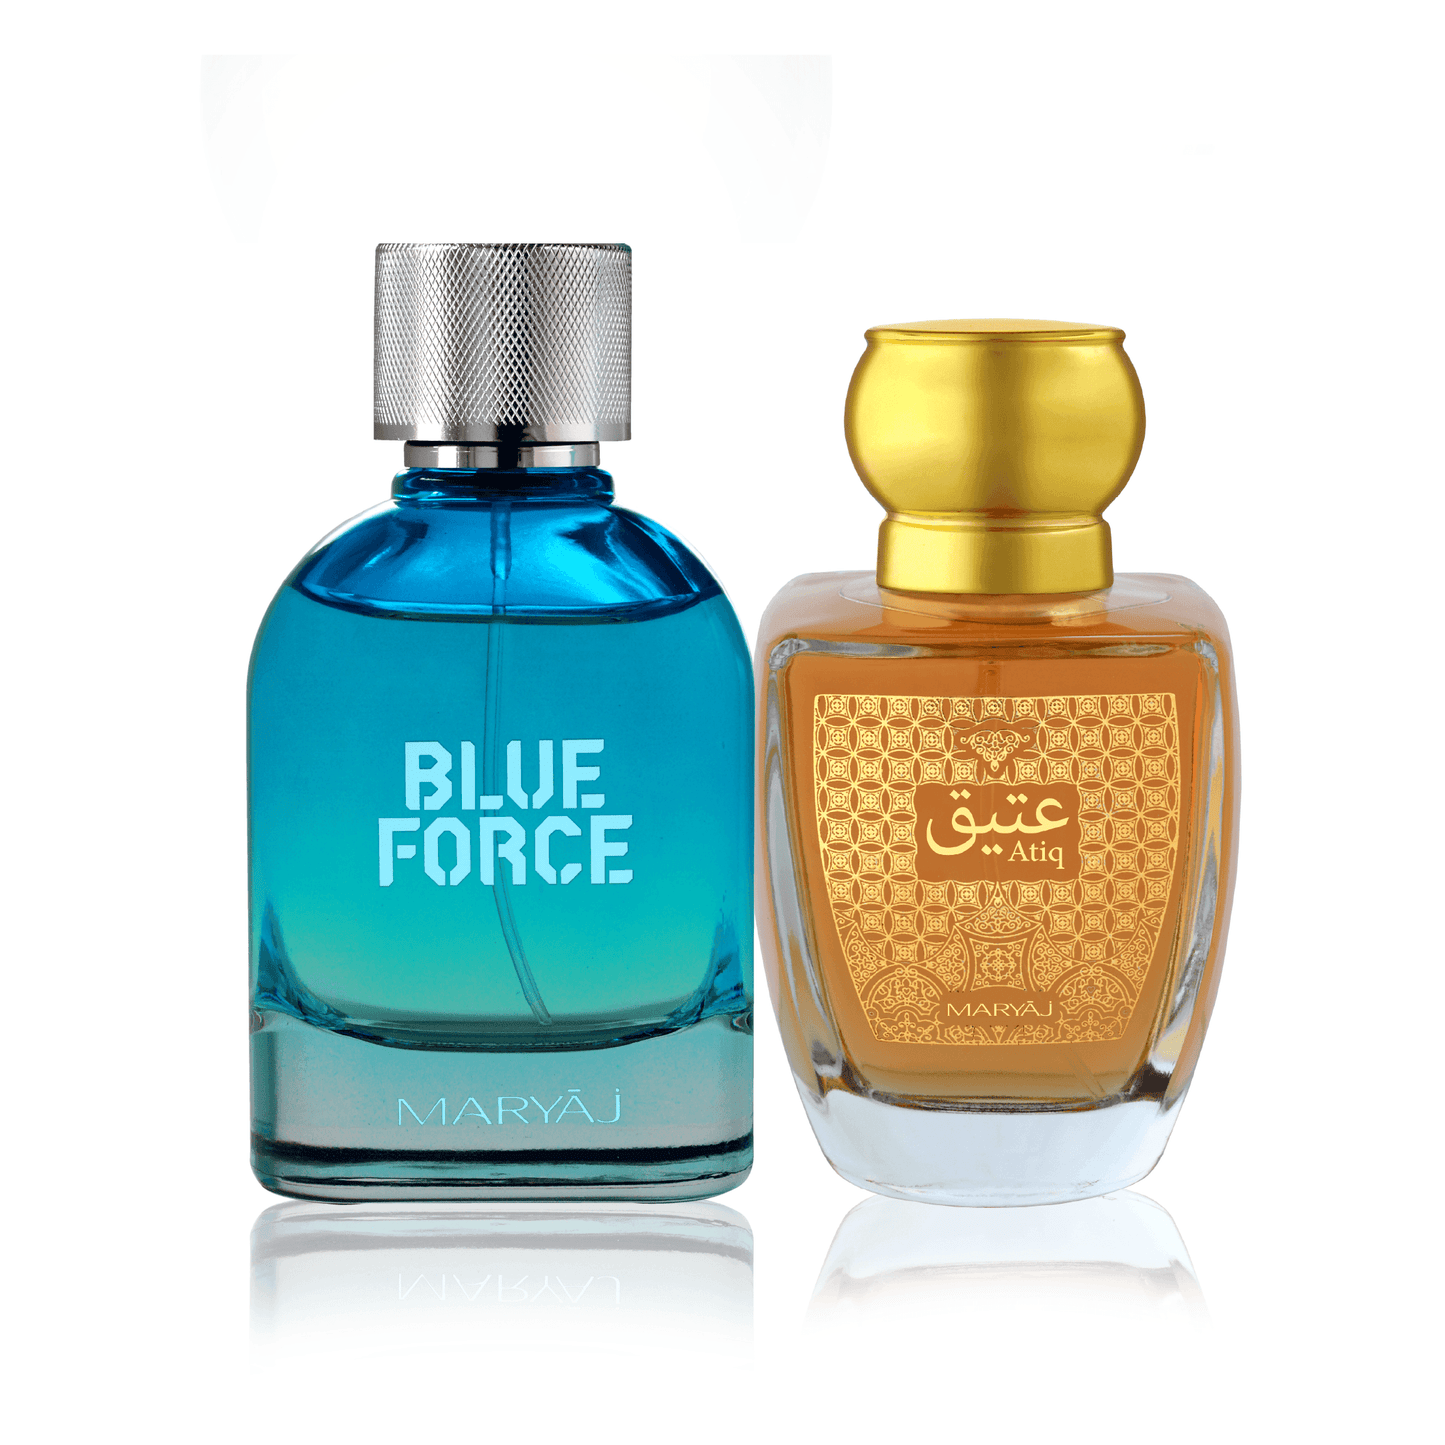 BLUE FORCE Eau De Parfum with ATIQ Combo for Unisex, Pack of 2 (100ml each)